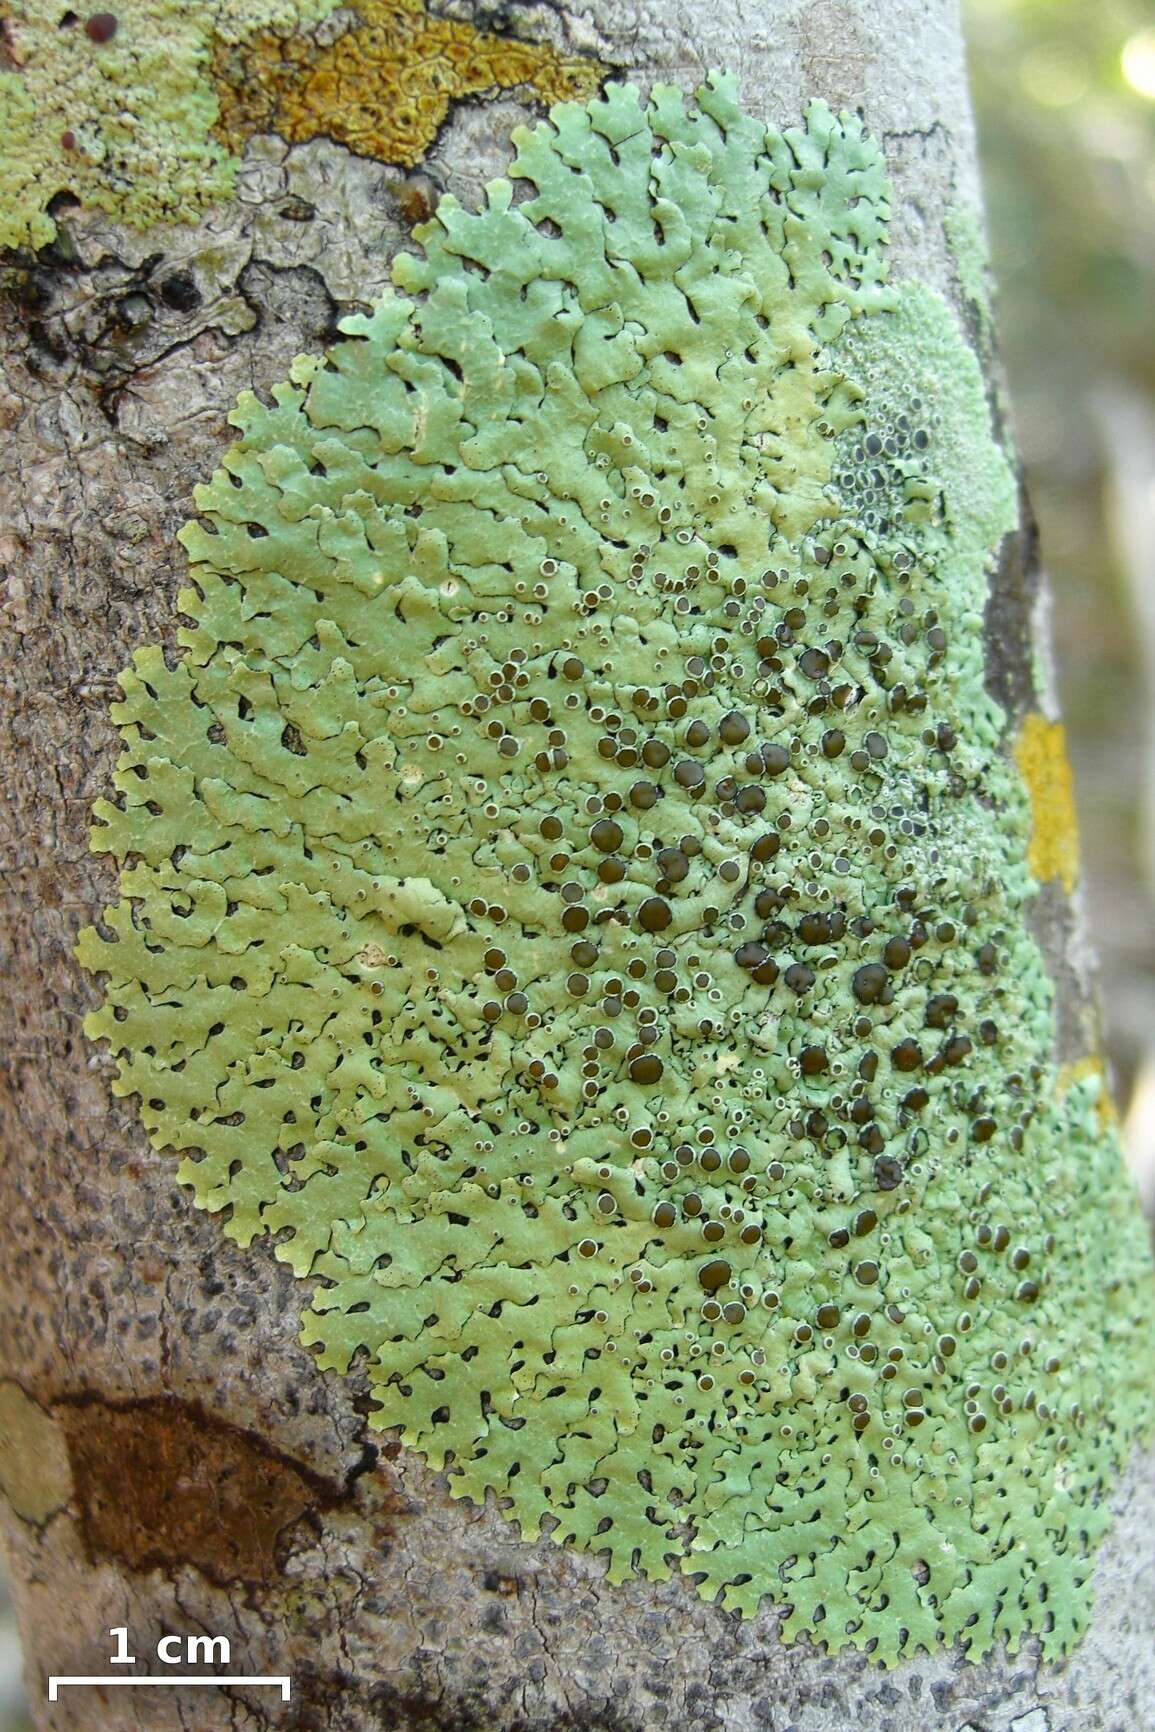 Image of relicina lichen